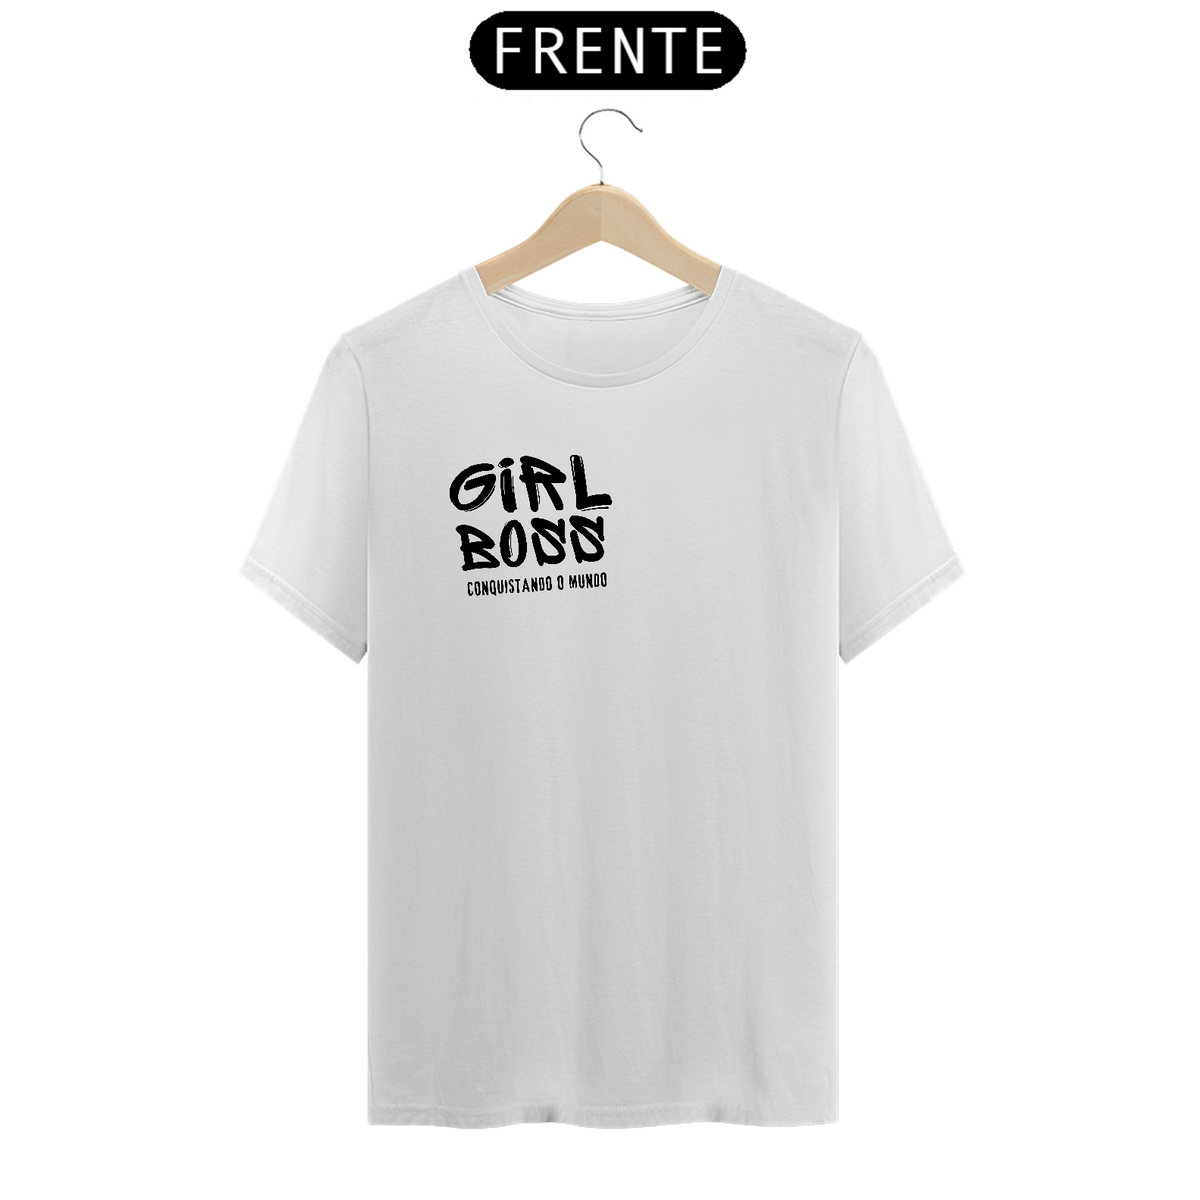 Nome do produto: Camiseta Girl Boss